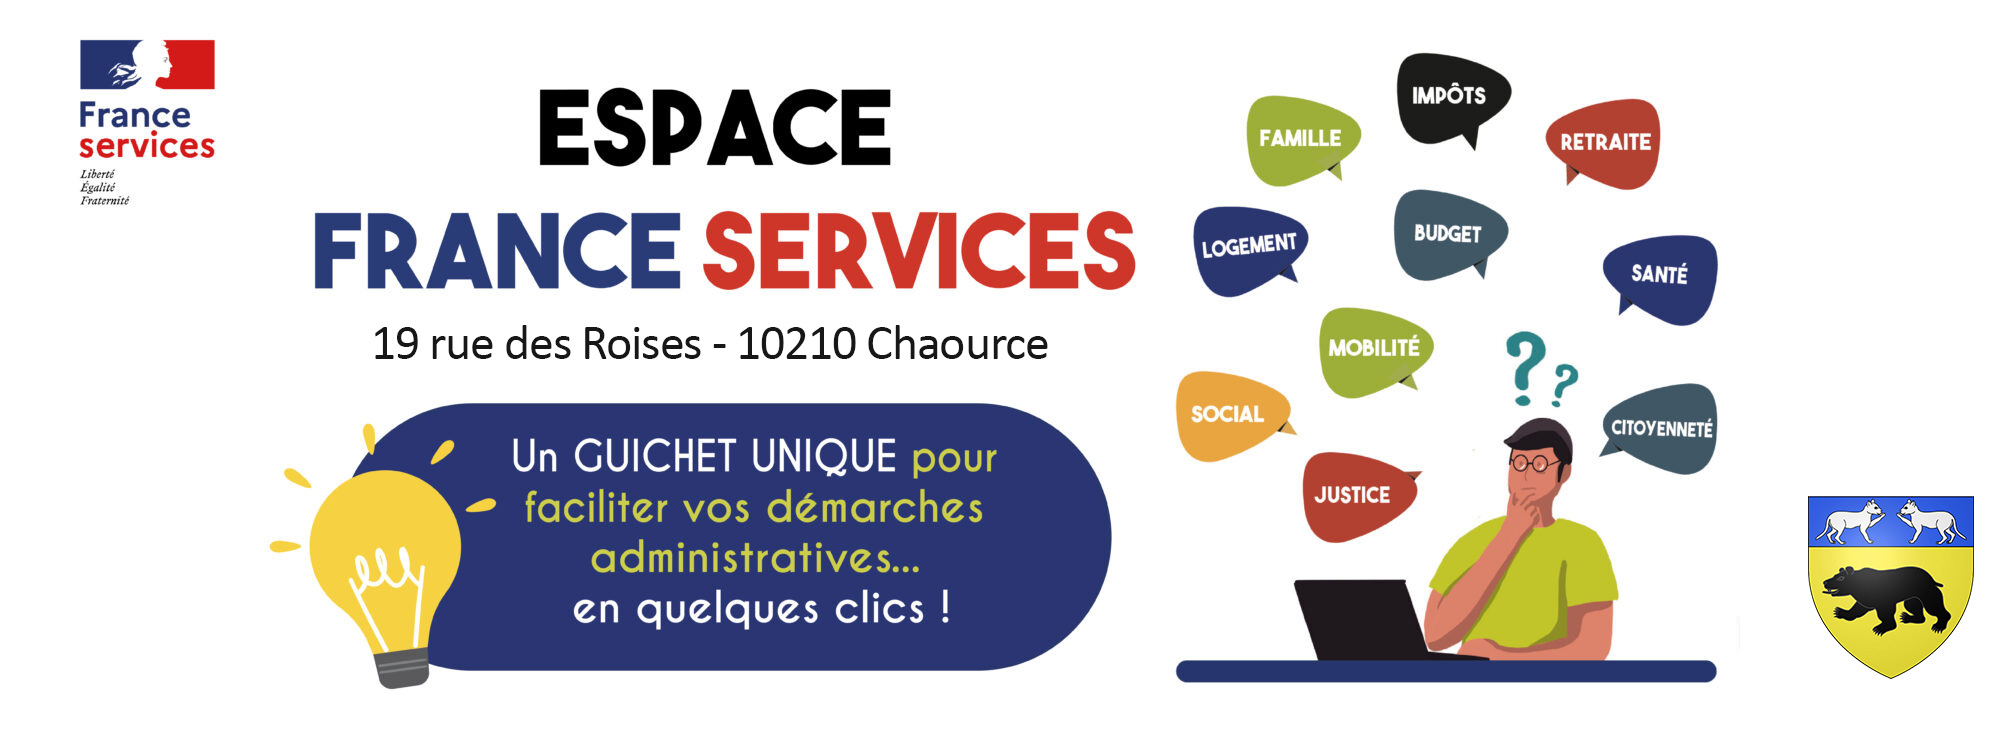 Banniere-Espace-France-Services-2000x729